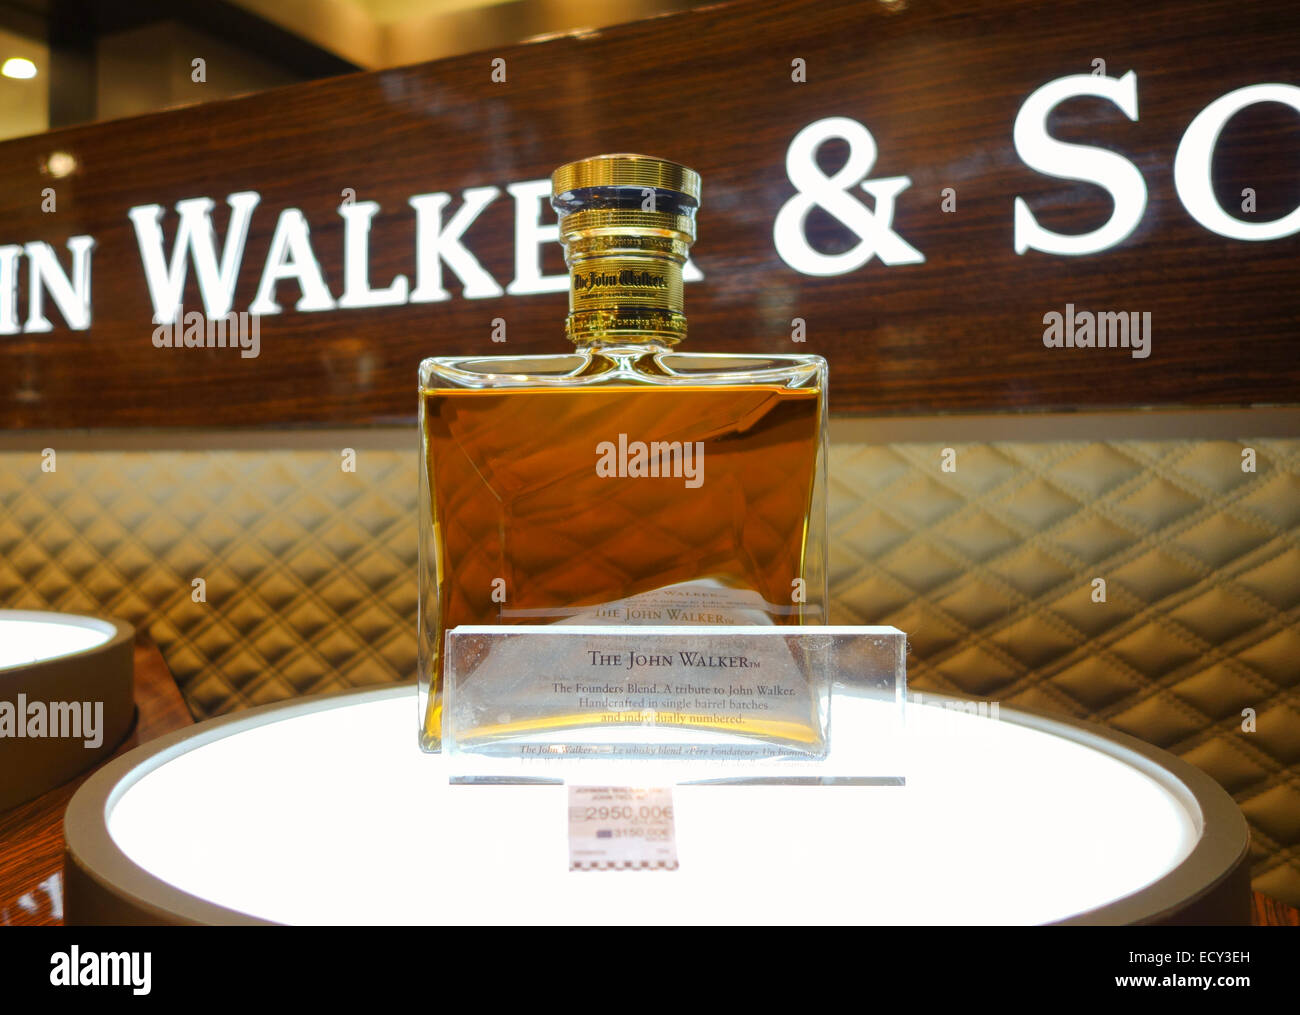 Une édition limitée le blended Scotch whisky, John Walker wisky, bouteille à l'écran. Banque D'Images